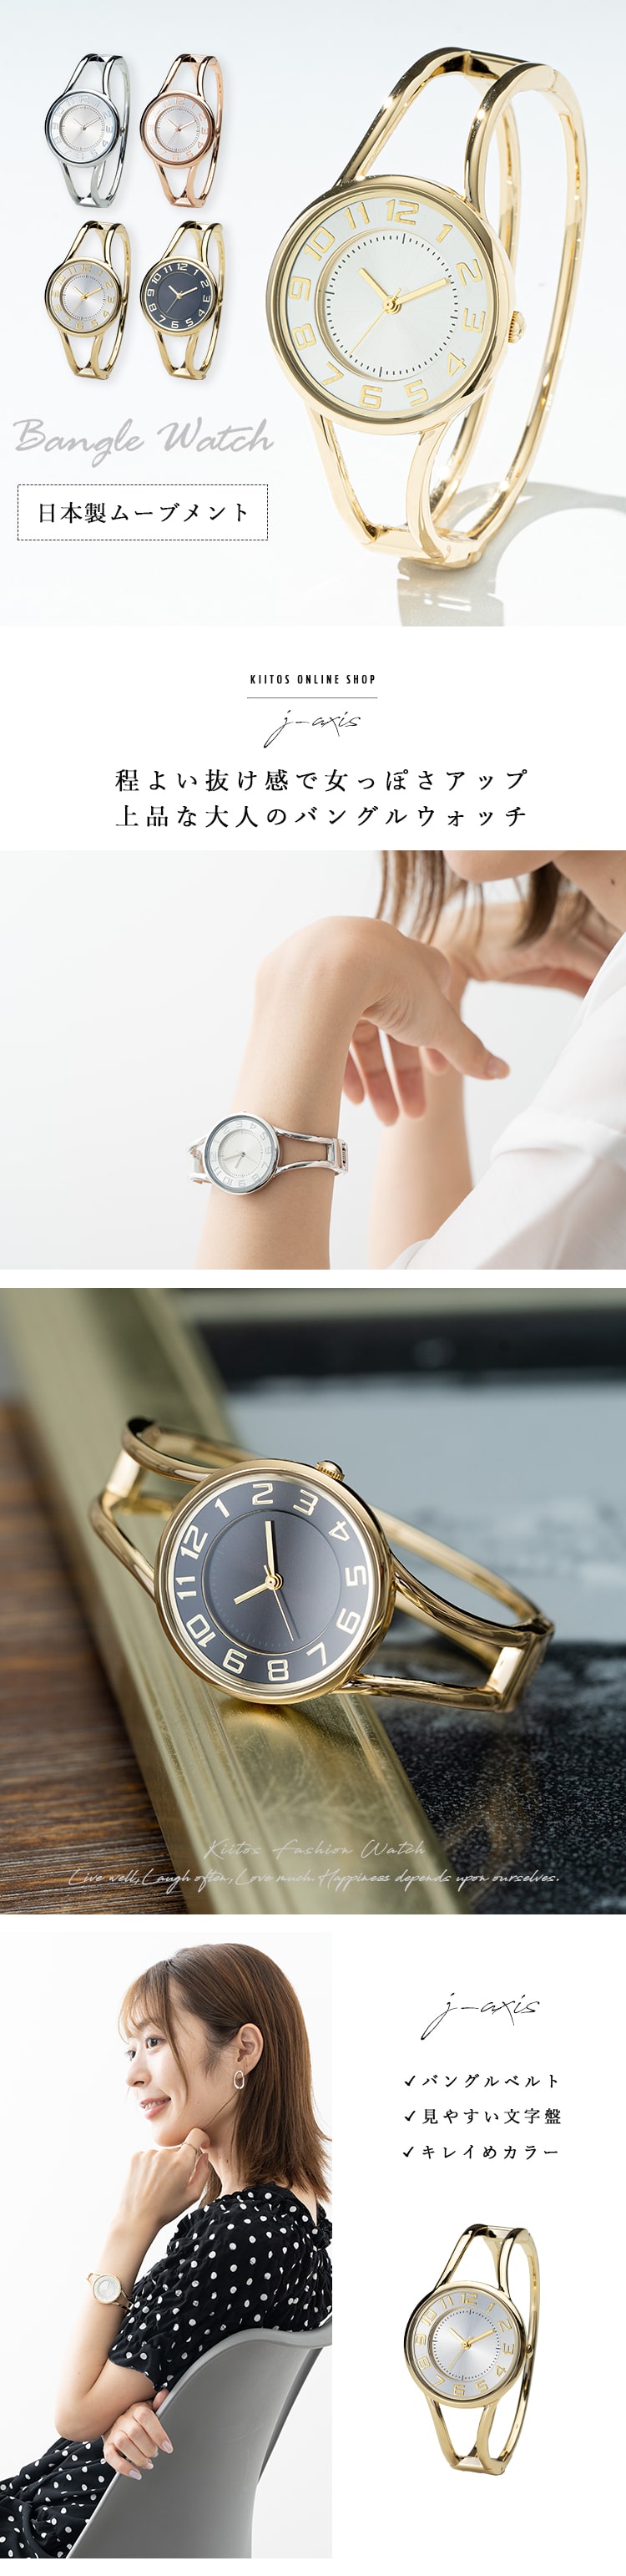 腕時計 レディース メタル バングルウォッチ J-axis シンプル 大人 かわいい おしゃれ ギフト プレゼント 1年間のメーカー保証付 送料無料  :sun-bl1168:神戸岡本Kiitos 通販 